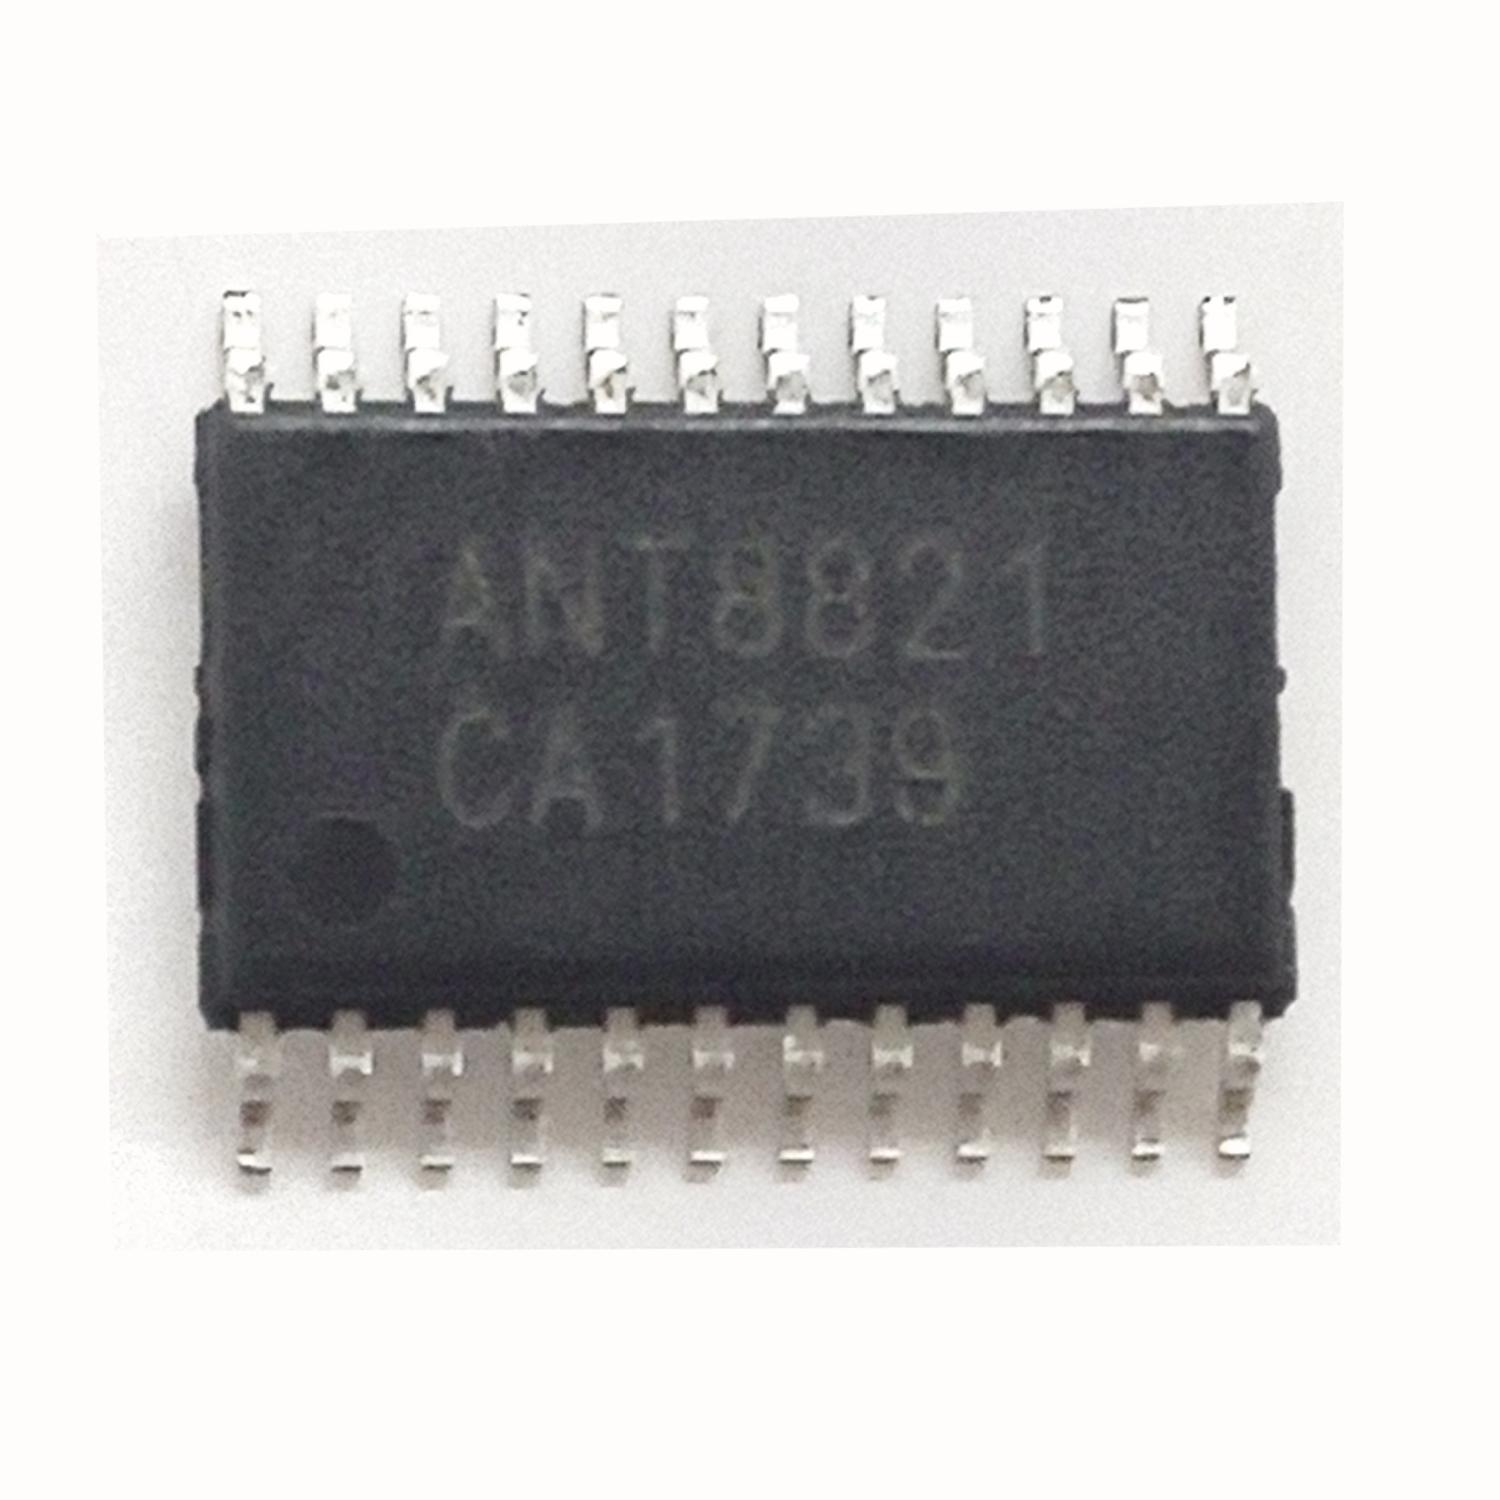 Микросхема ANT8821 SMD TSSOP24 4.5W (усилитель)